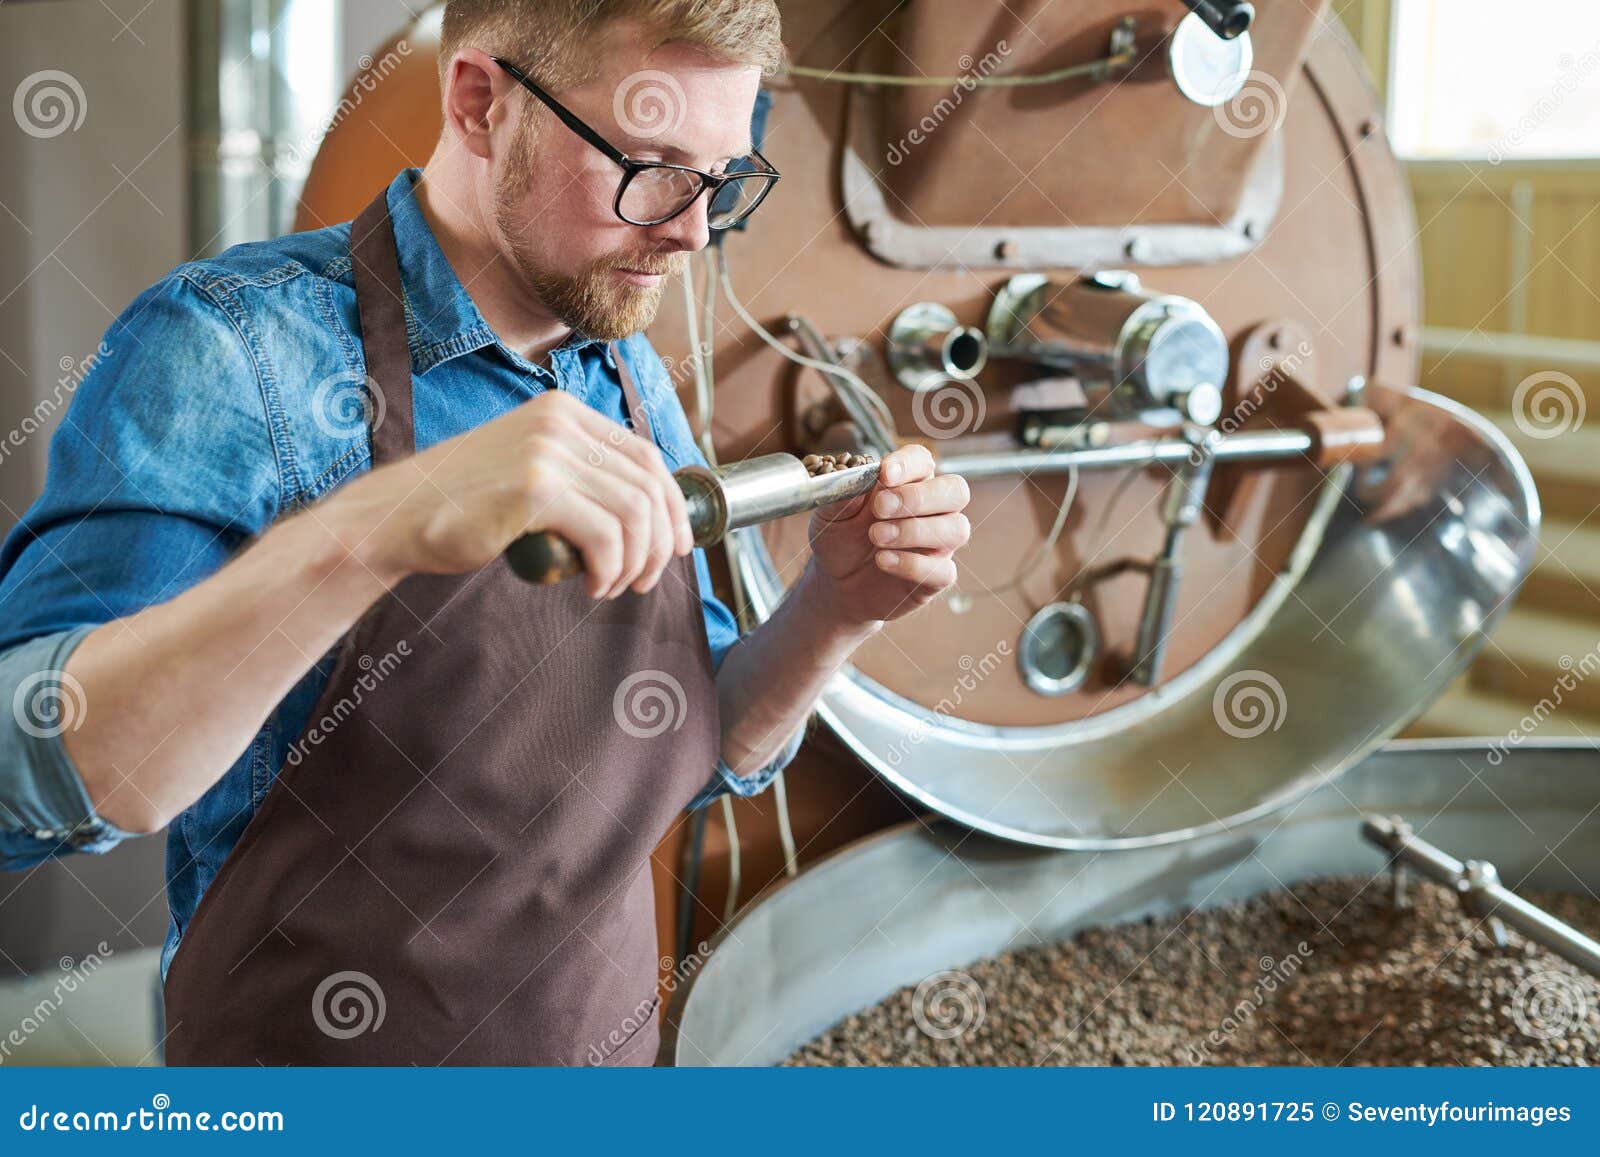 Artisan Roasting Coffee stock image. Image of artisan - 120891725